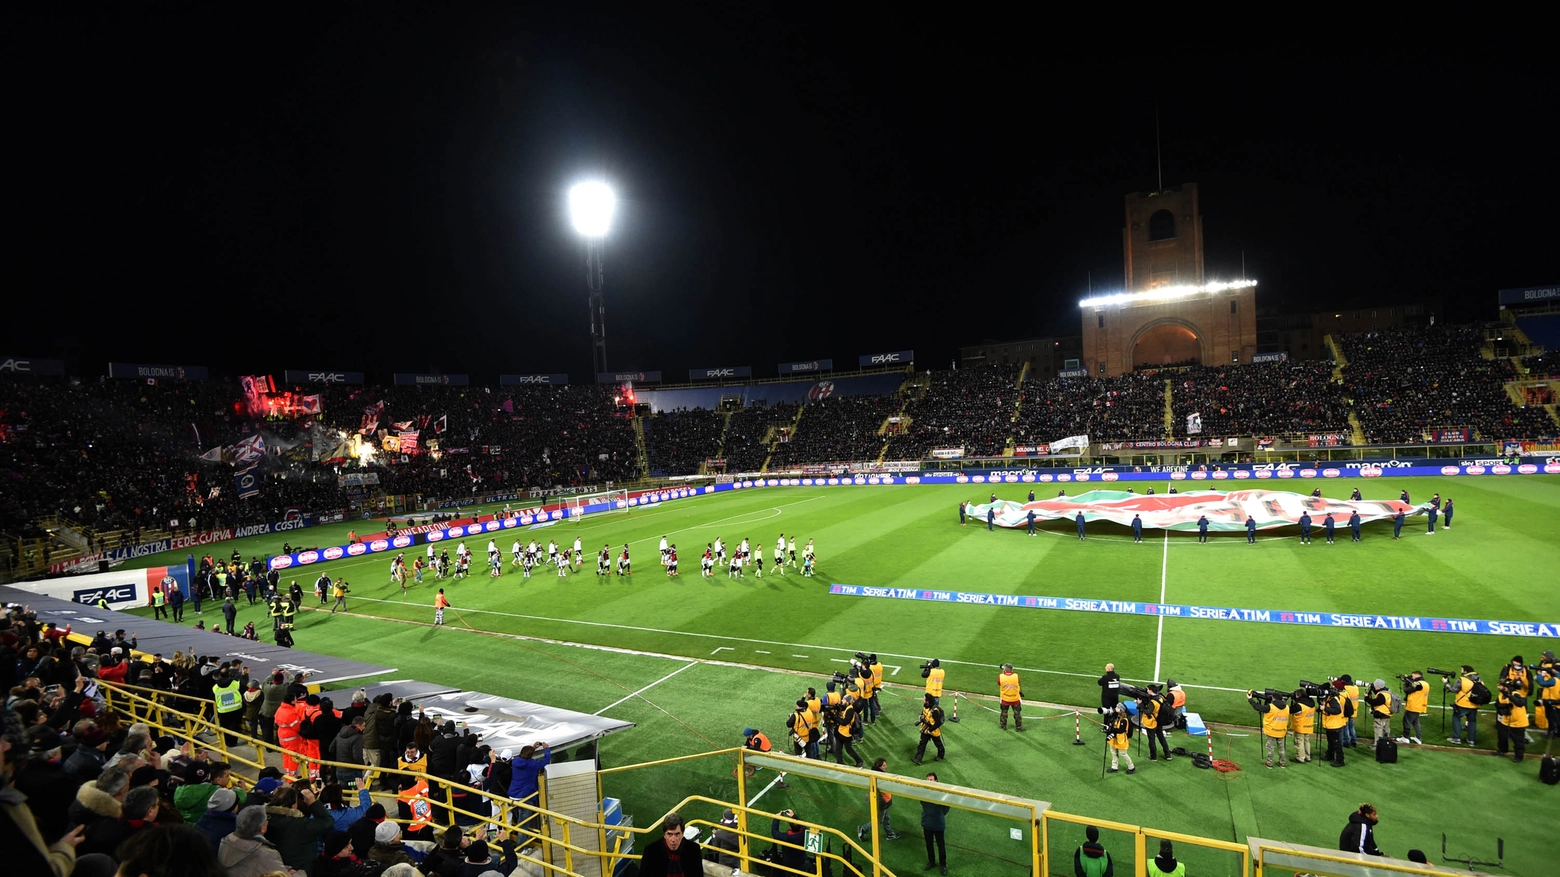 Lo stadio Dall'Ara pieno per una degli ultimi Bologna Juventus (FotoSchicchi)